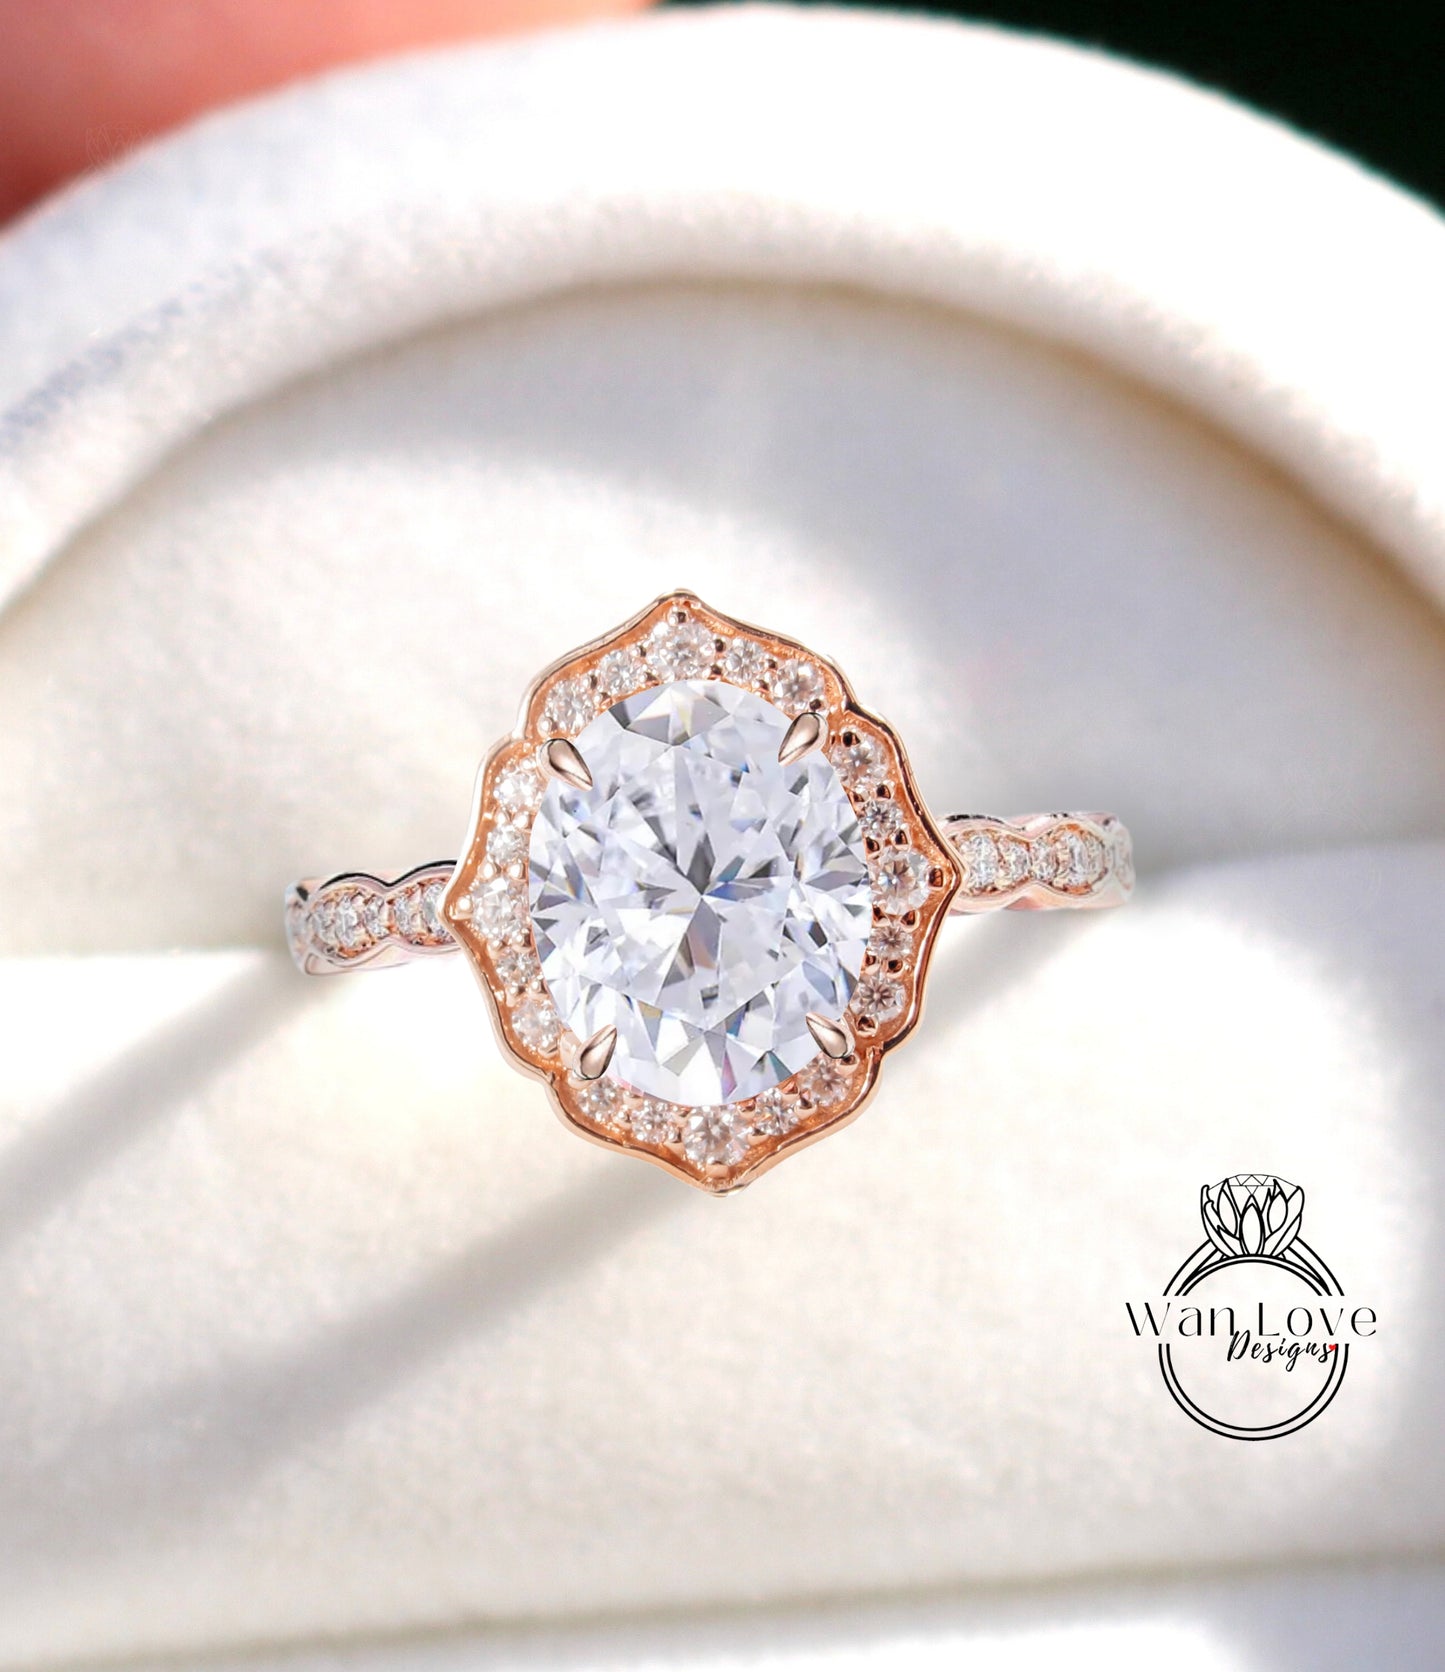 Anello di fidanzamento con zaffiro bianco di forma ovale, anello con alone di diamanti, anello smerlato in moissanite, anello vintage unico, anello in oro rosa, anello anniversario